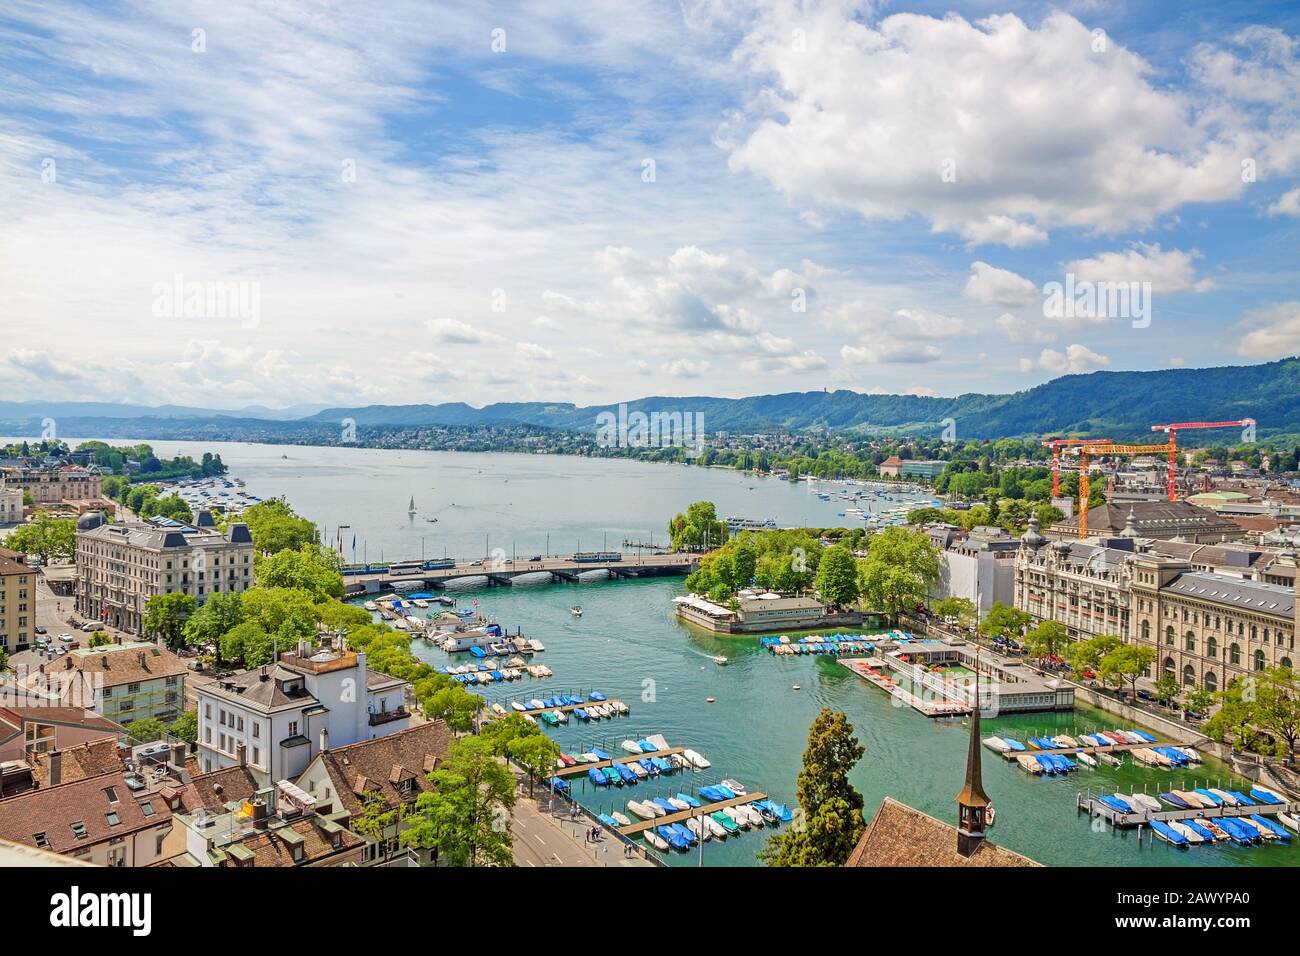 City of Zurich, river Limmat and Lake Zurich (Zurichsee) Stock Photo